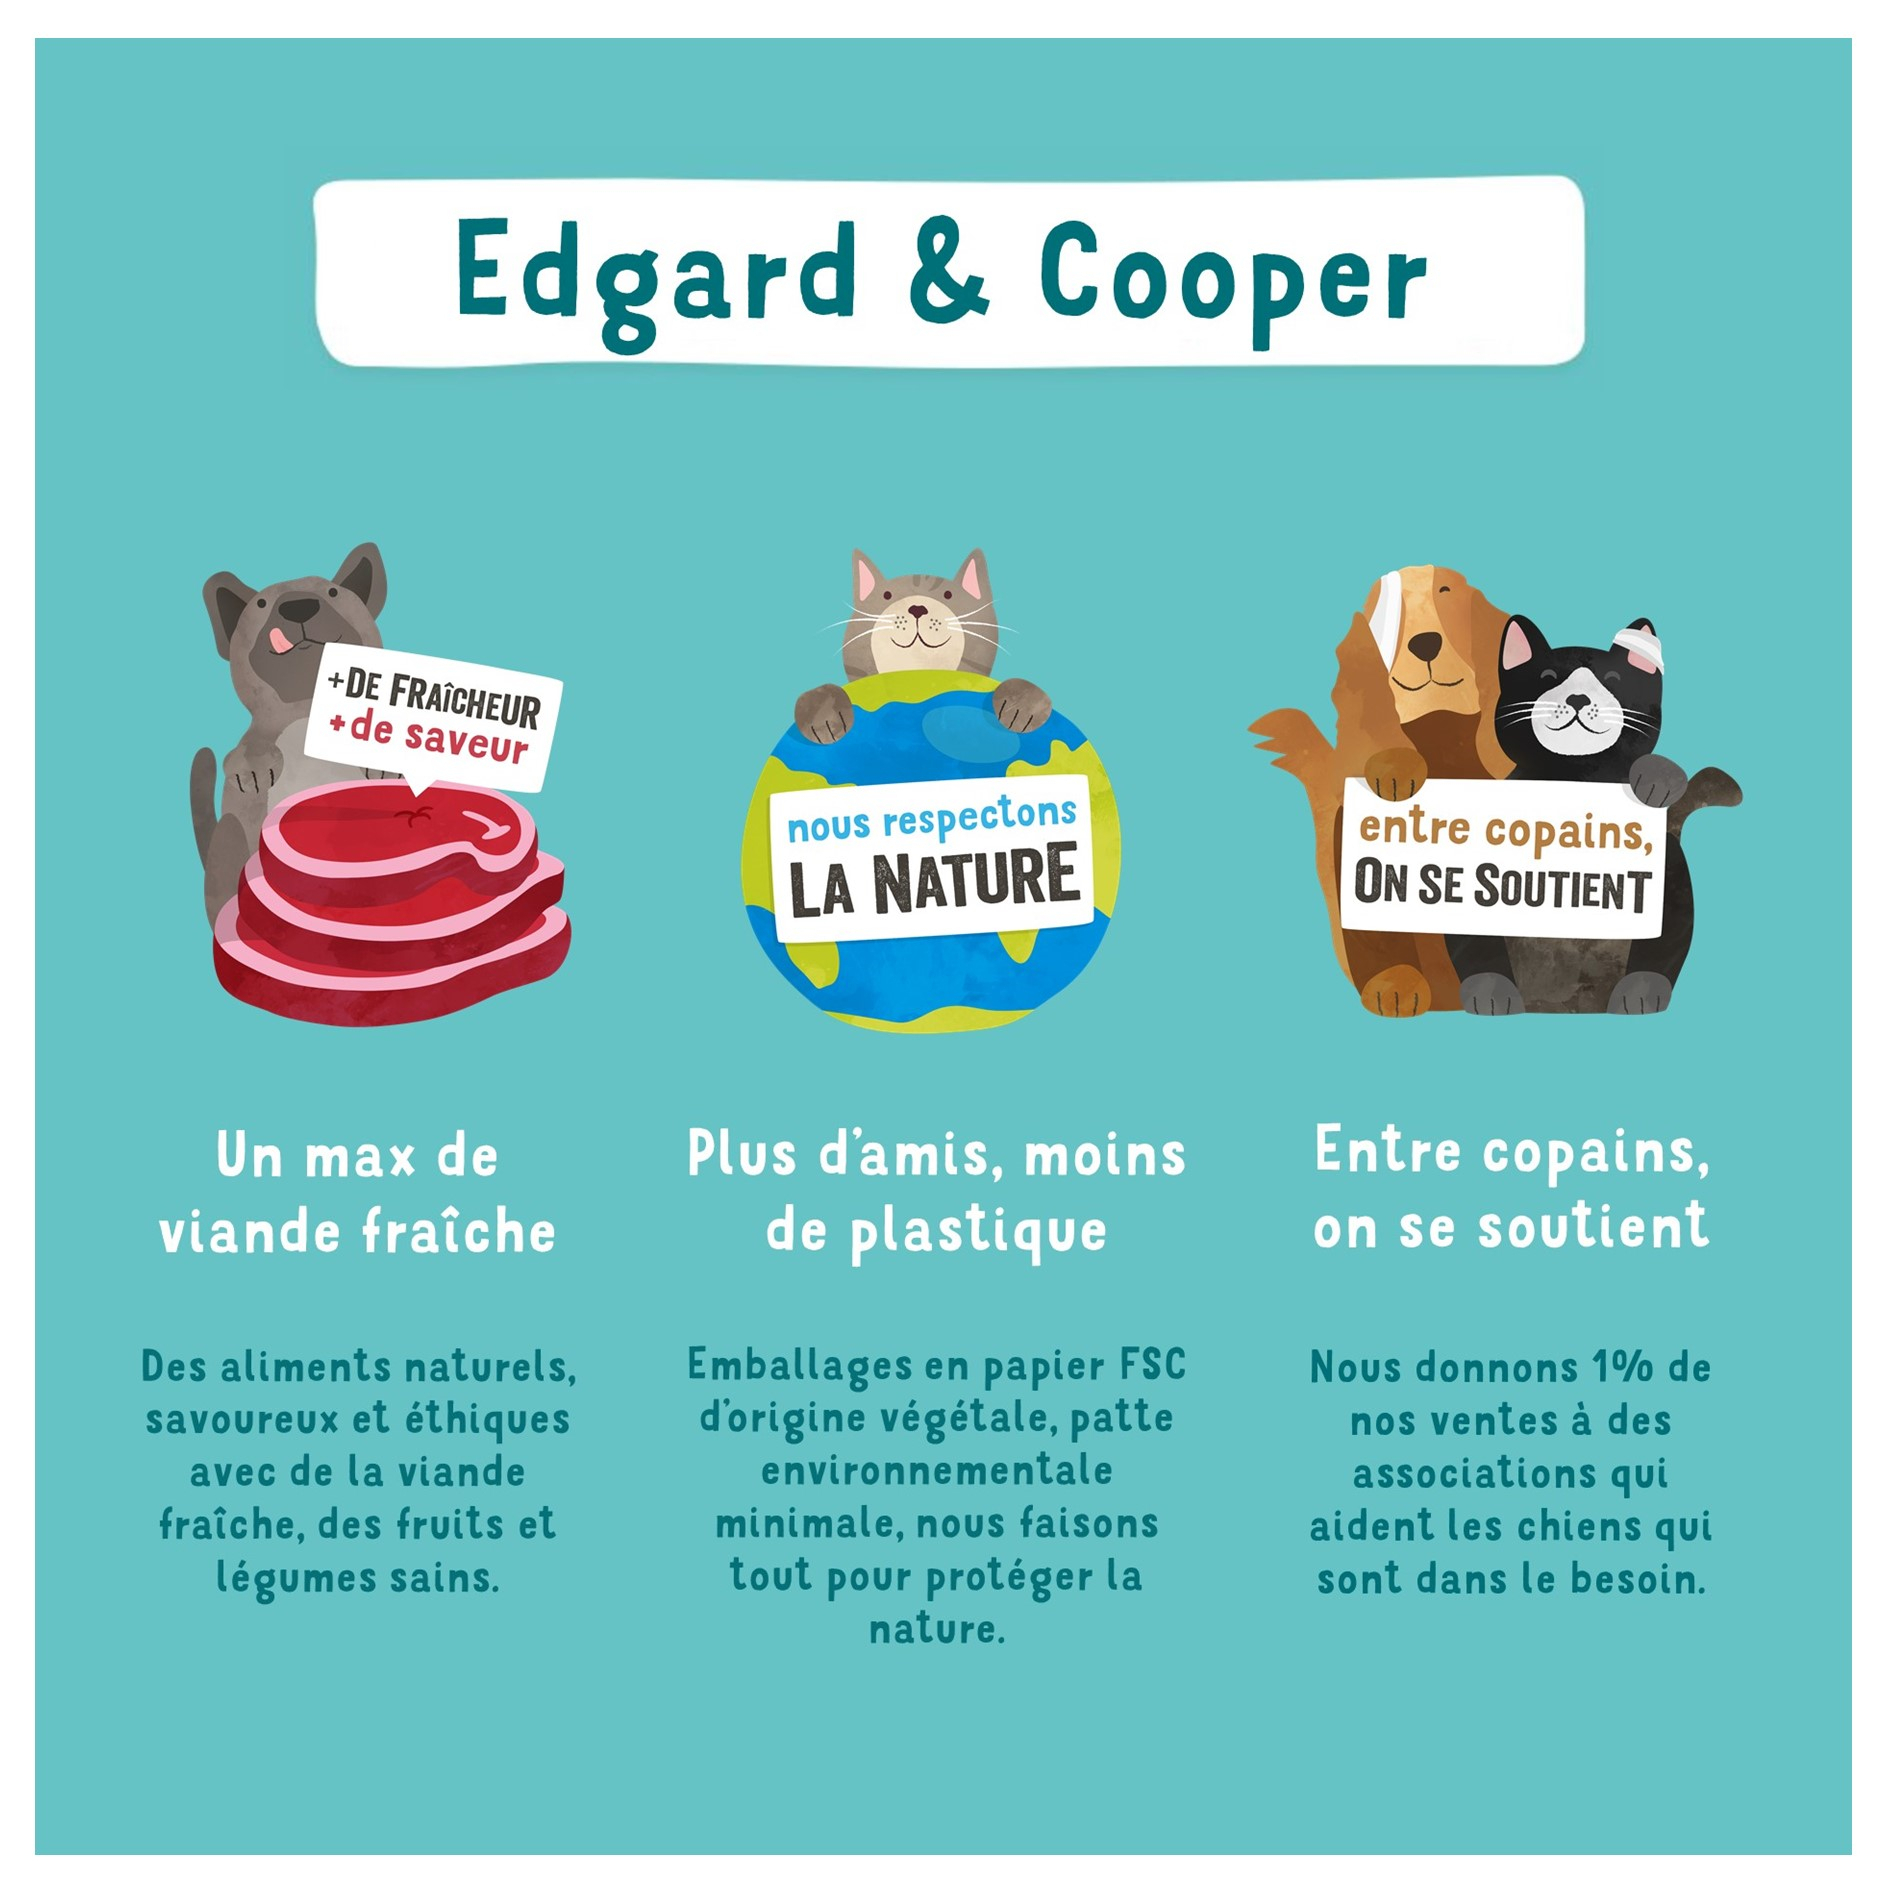 Edgard & Cooper Filets Thon frais Sans Céréales pour Chat